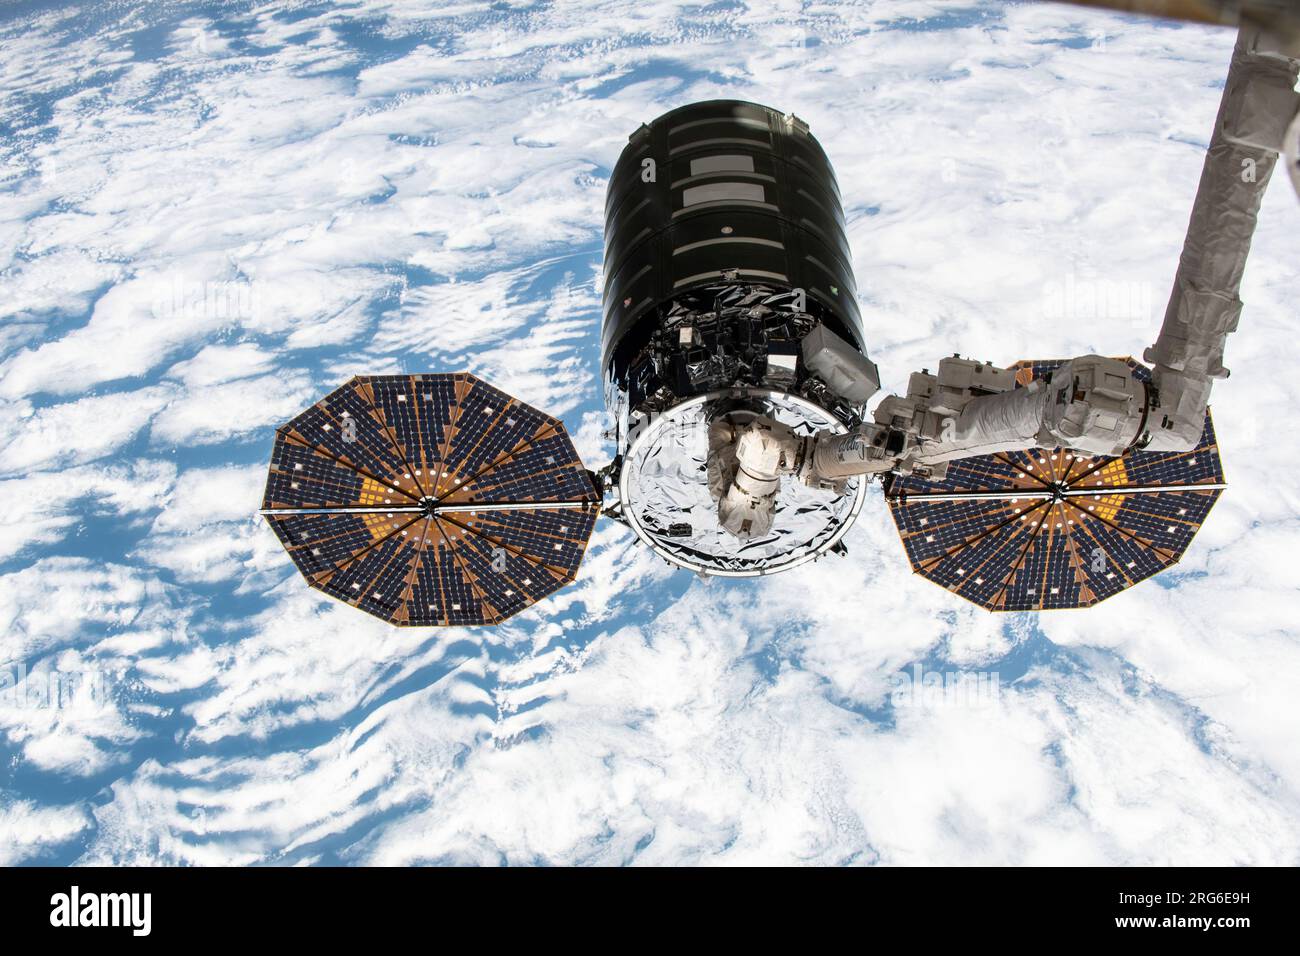 La navicella spaziale Cygnus nelle impugnature del braccio robotico Canadarm2 sopra la Terra. Foto Stock